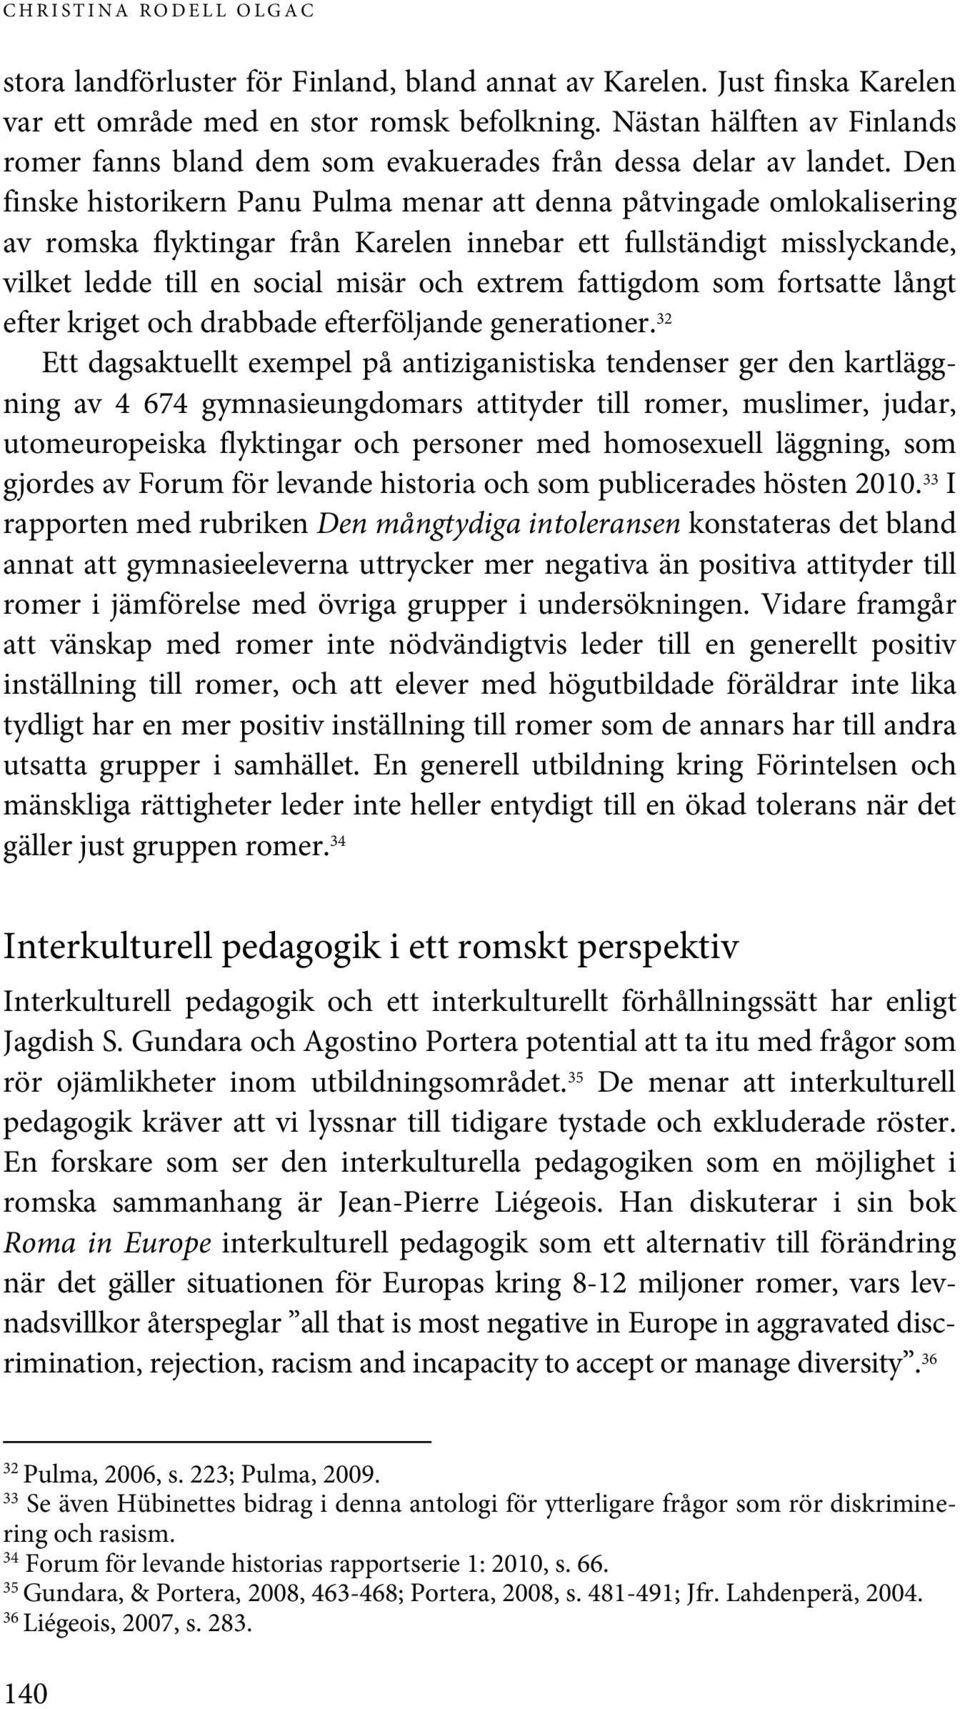 Den finske historikern Panu Pulma menar att denna påtvingade omlokalisering av romska flyktingar från Karelen innebar ett fullständigt misslyckande, vilket ledde till en social misär och extrem